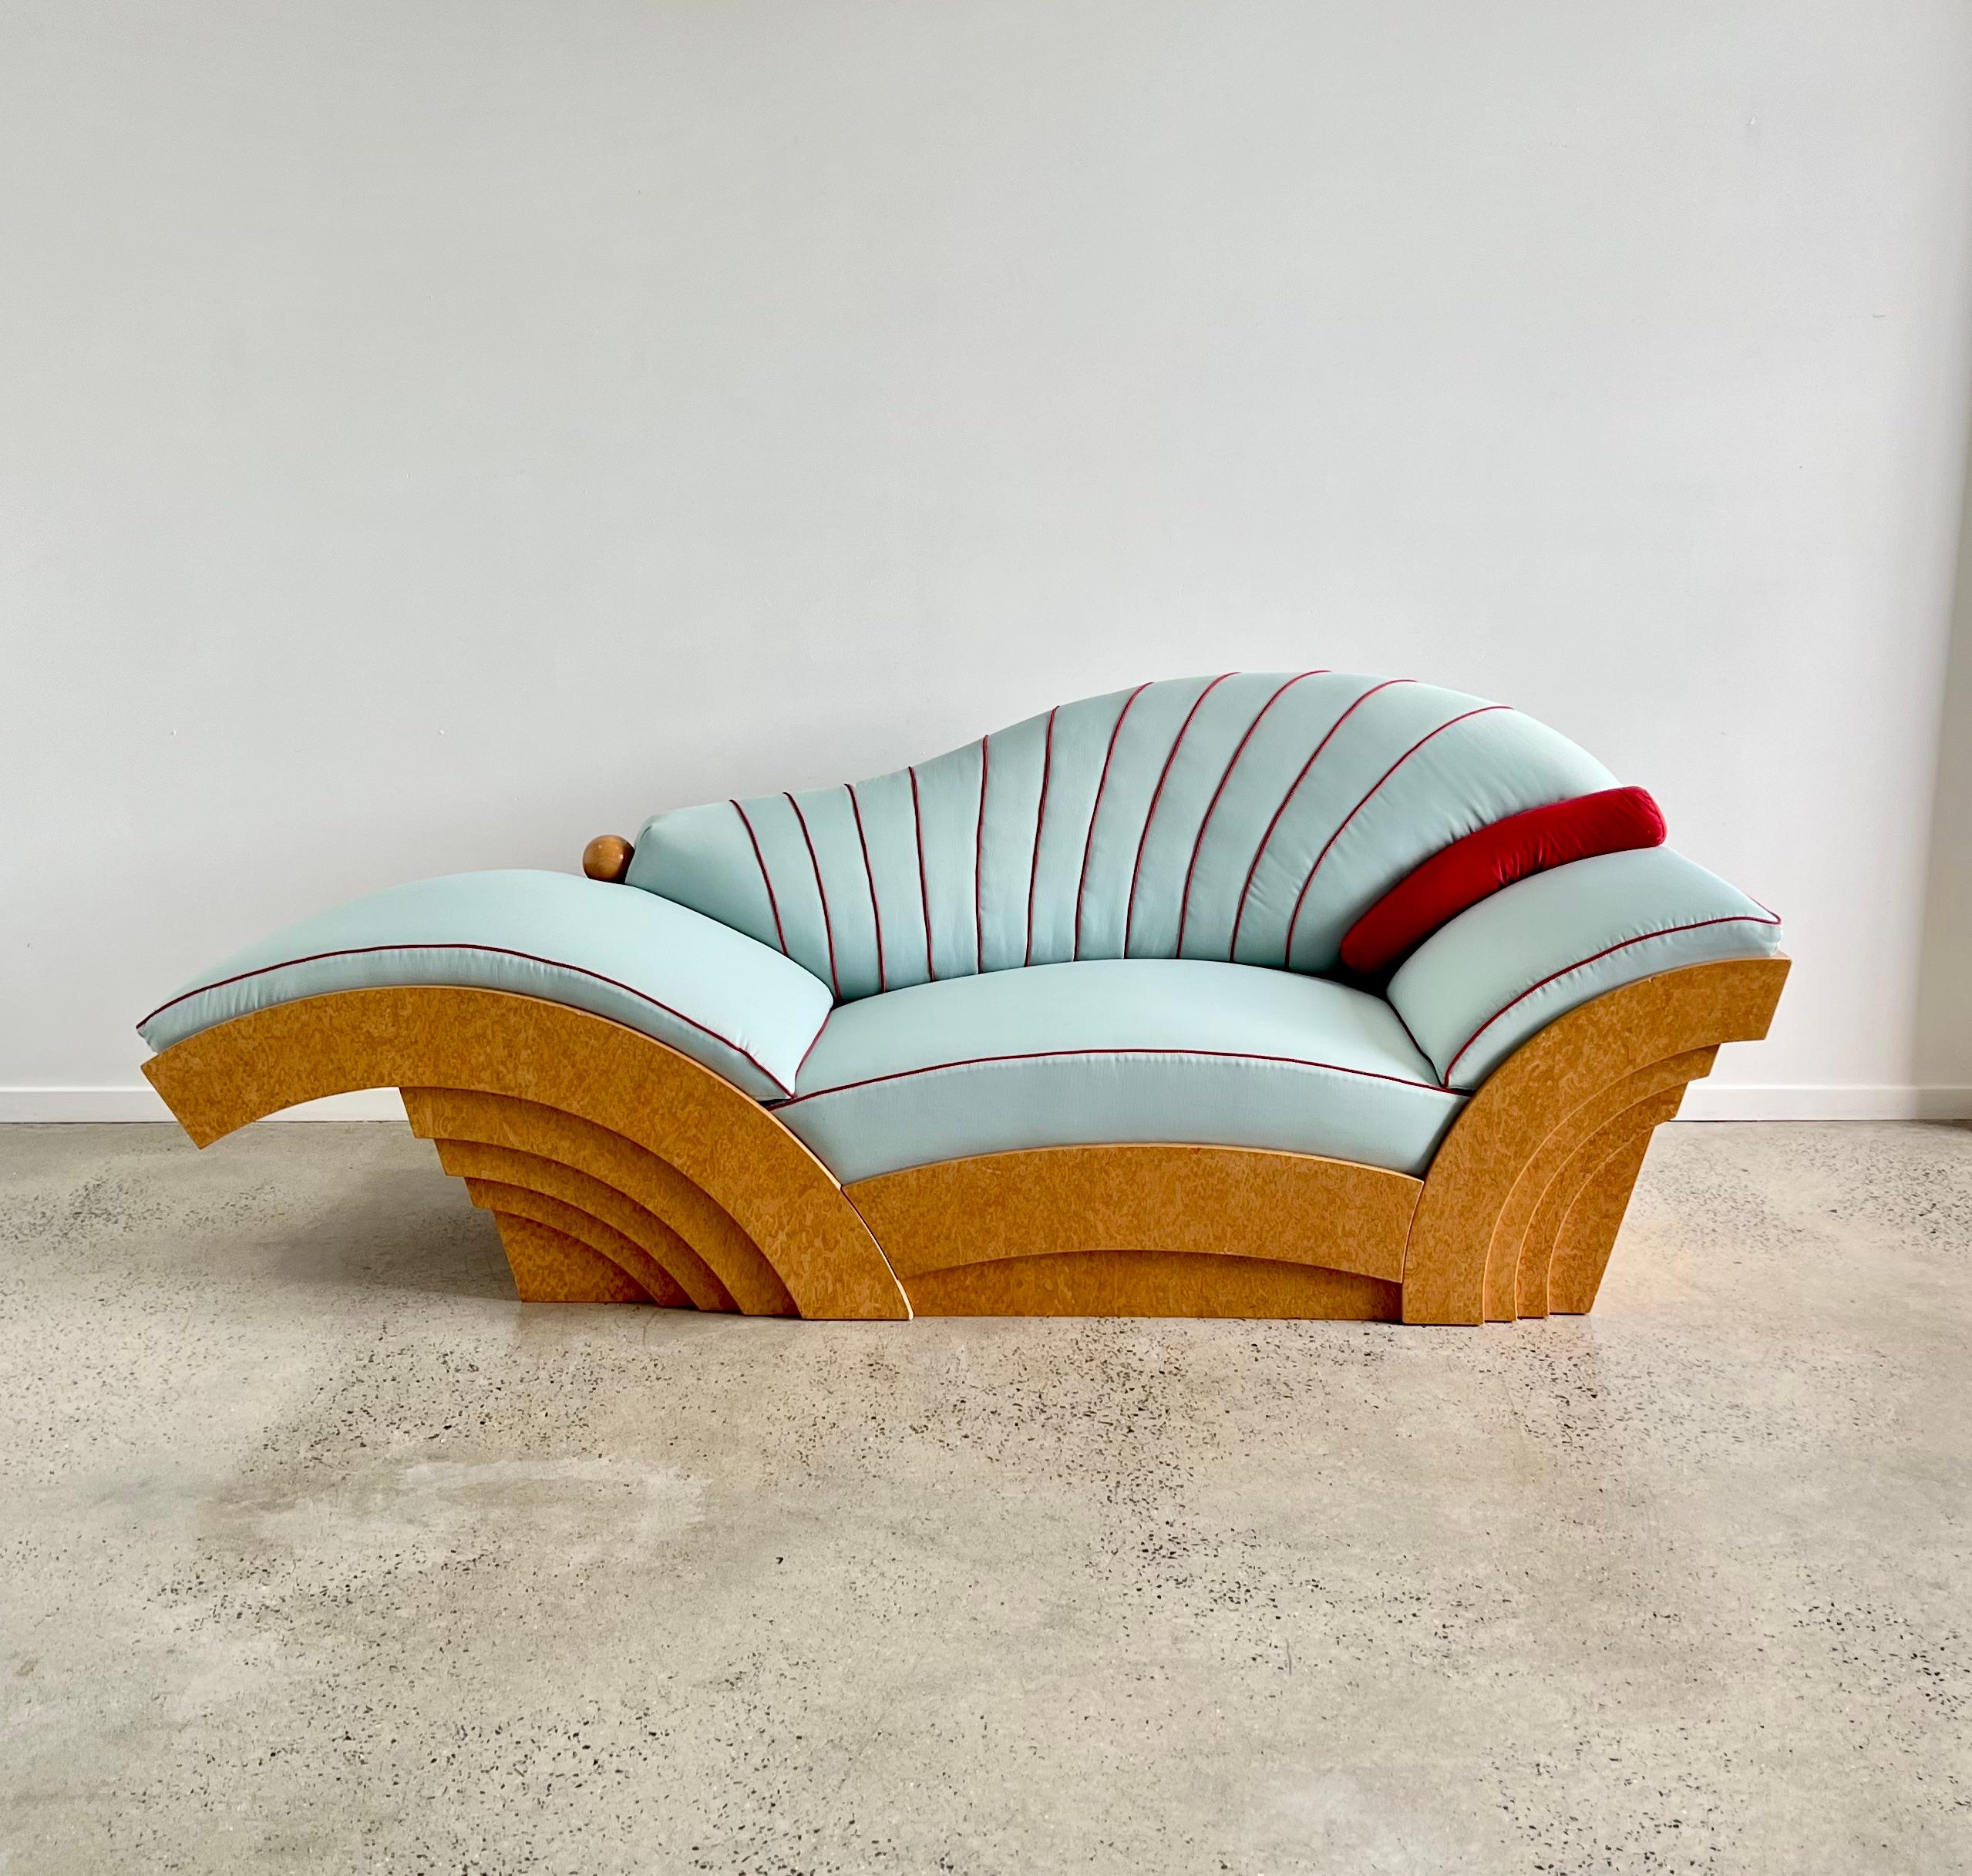 Ein schönes und seltenes Sofa von diesem postmodernen österreichischen Designer. Hollein wurde 1934 in Wien geboren und arbeitete während der Memphis-Periode mit Sottsass zusammen. Dieses seltene und einzigartige Sofa wurde von Poltronova in